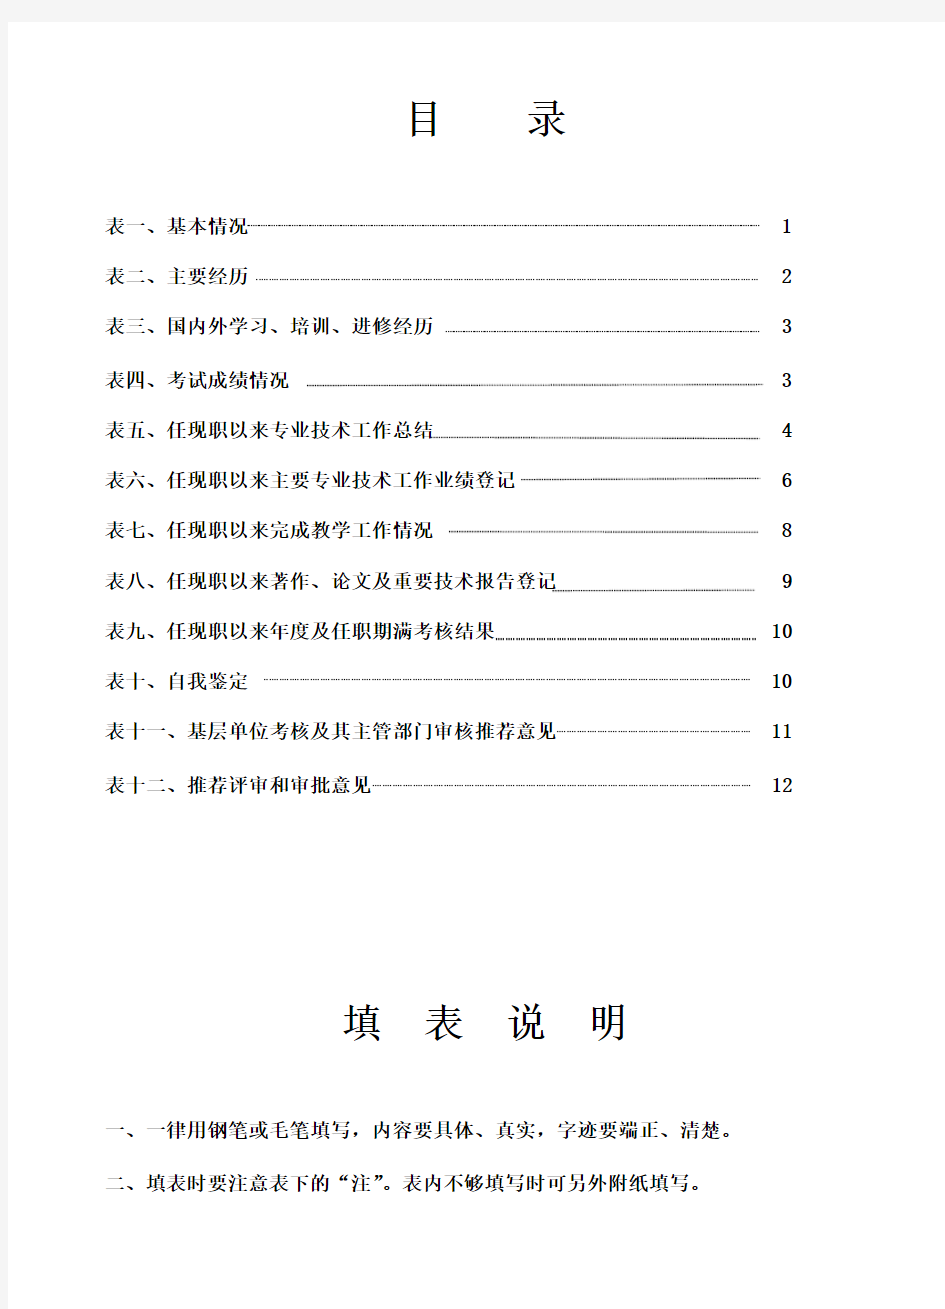 广西壮族自治区中级专业技术职务资格评审表(一式三份_皮A3内页16K)